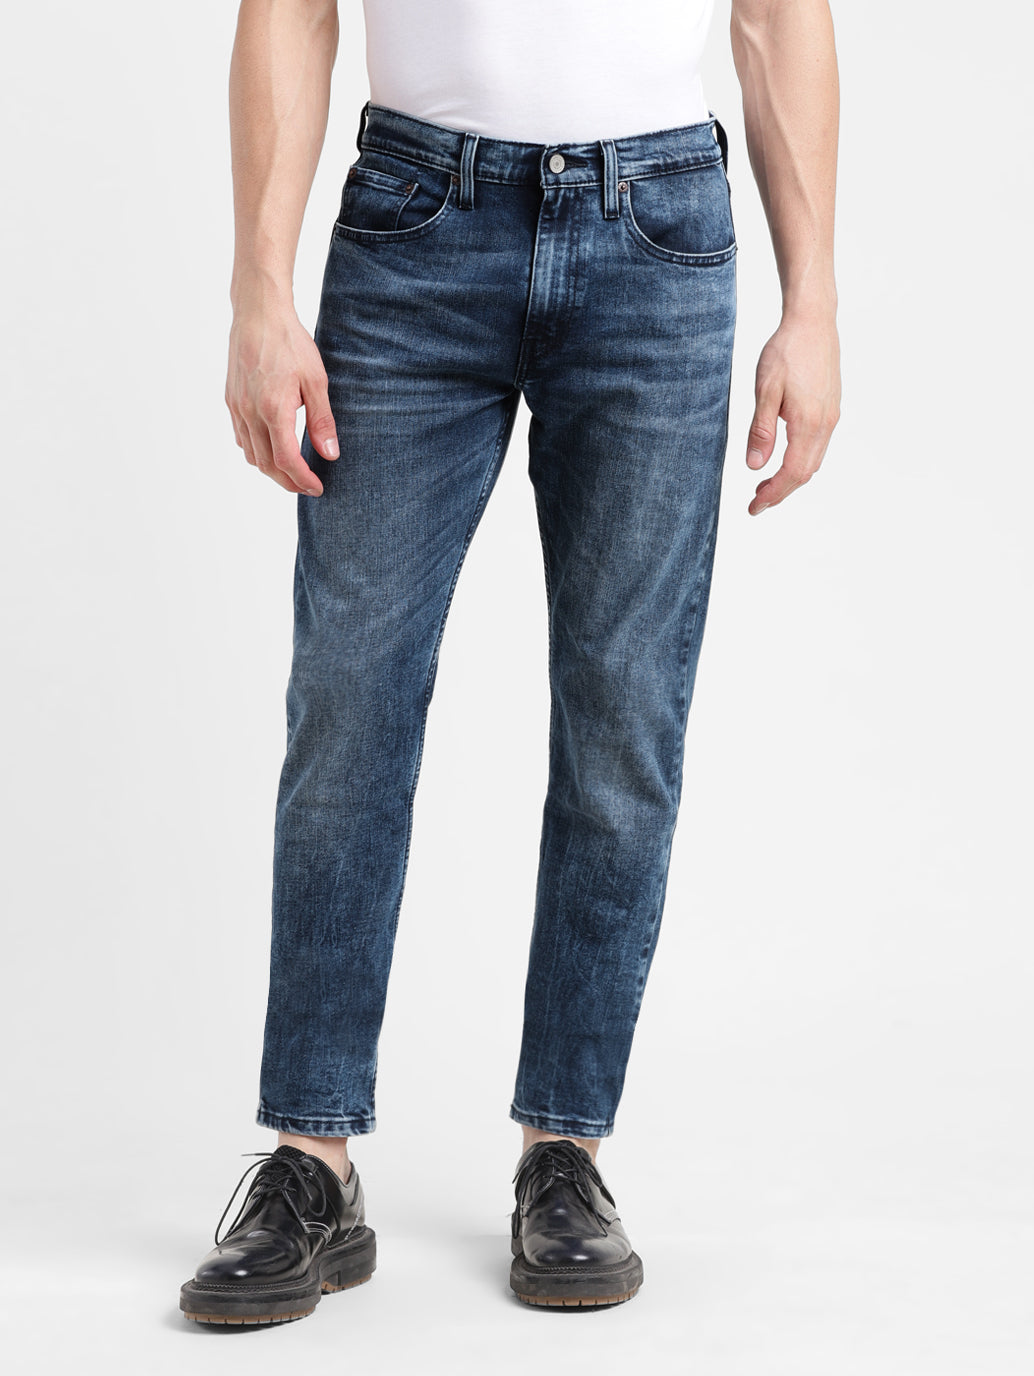 Men's Slim Tapered Jeans